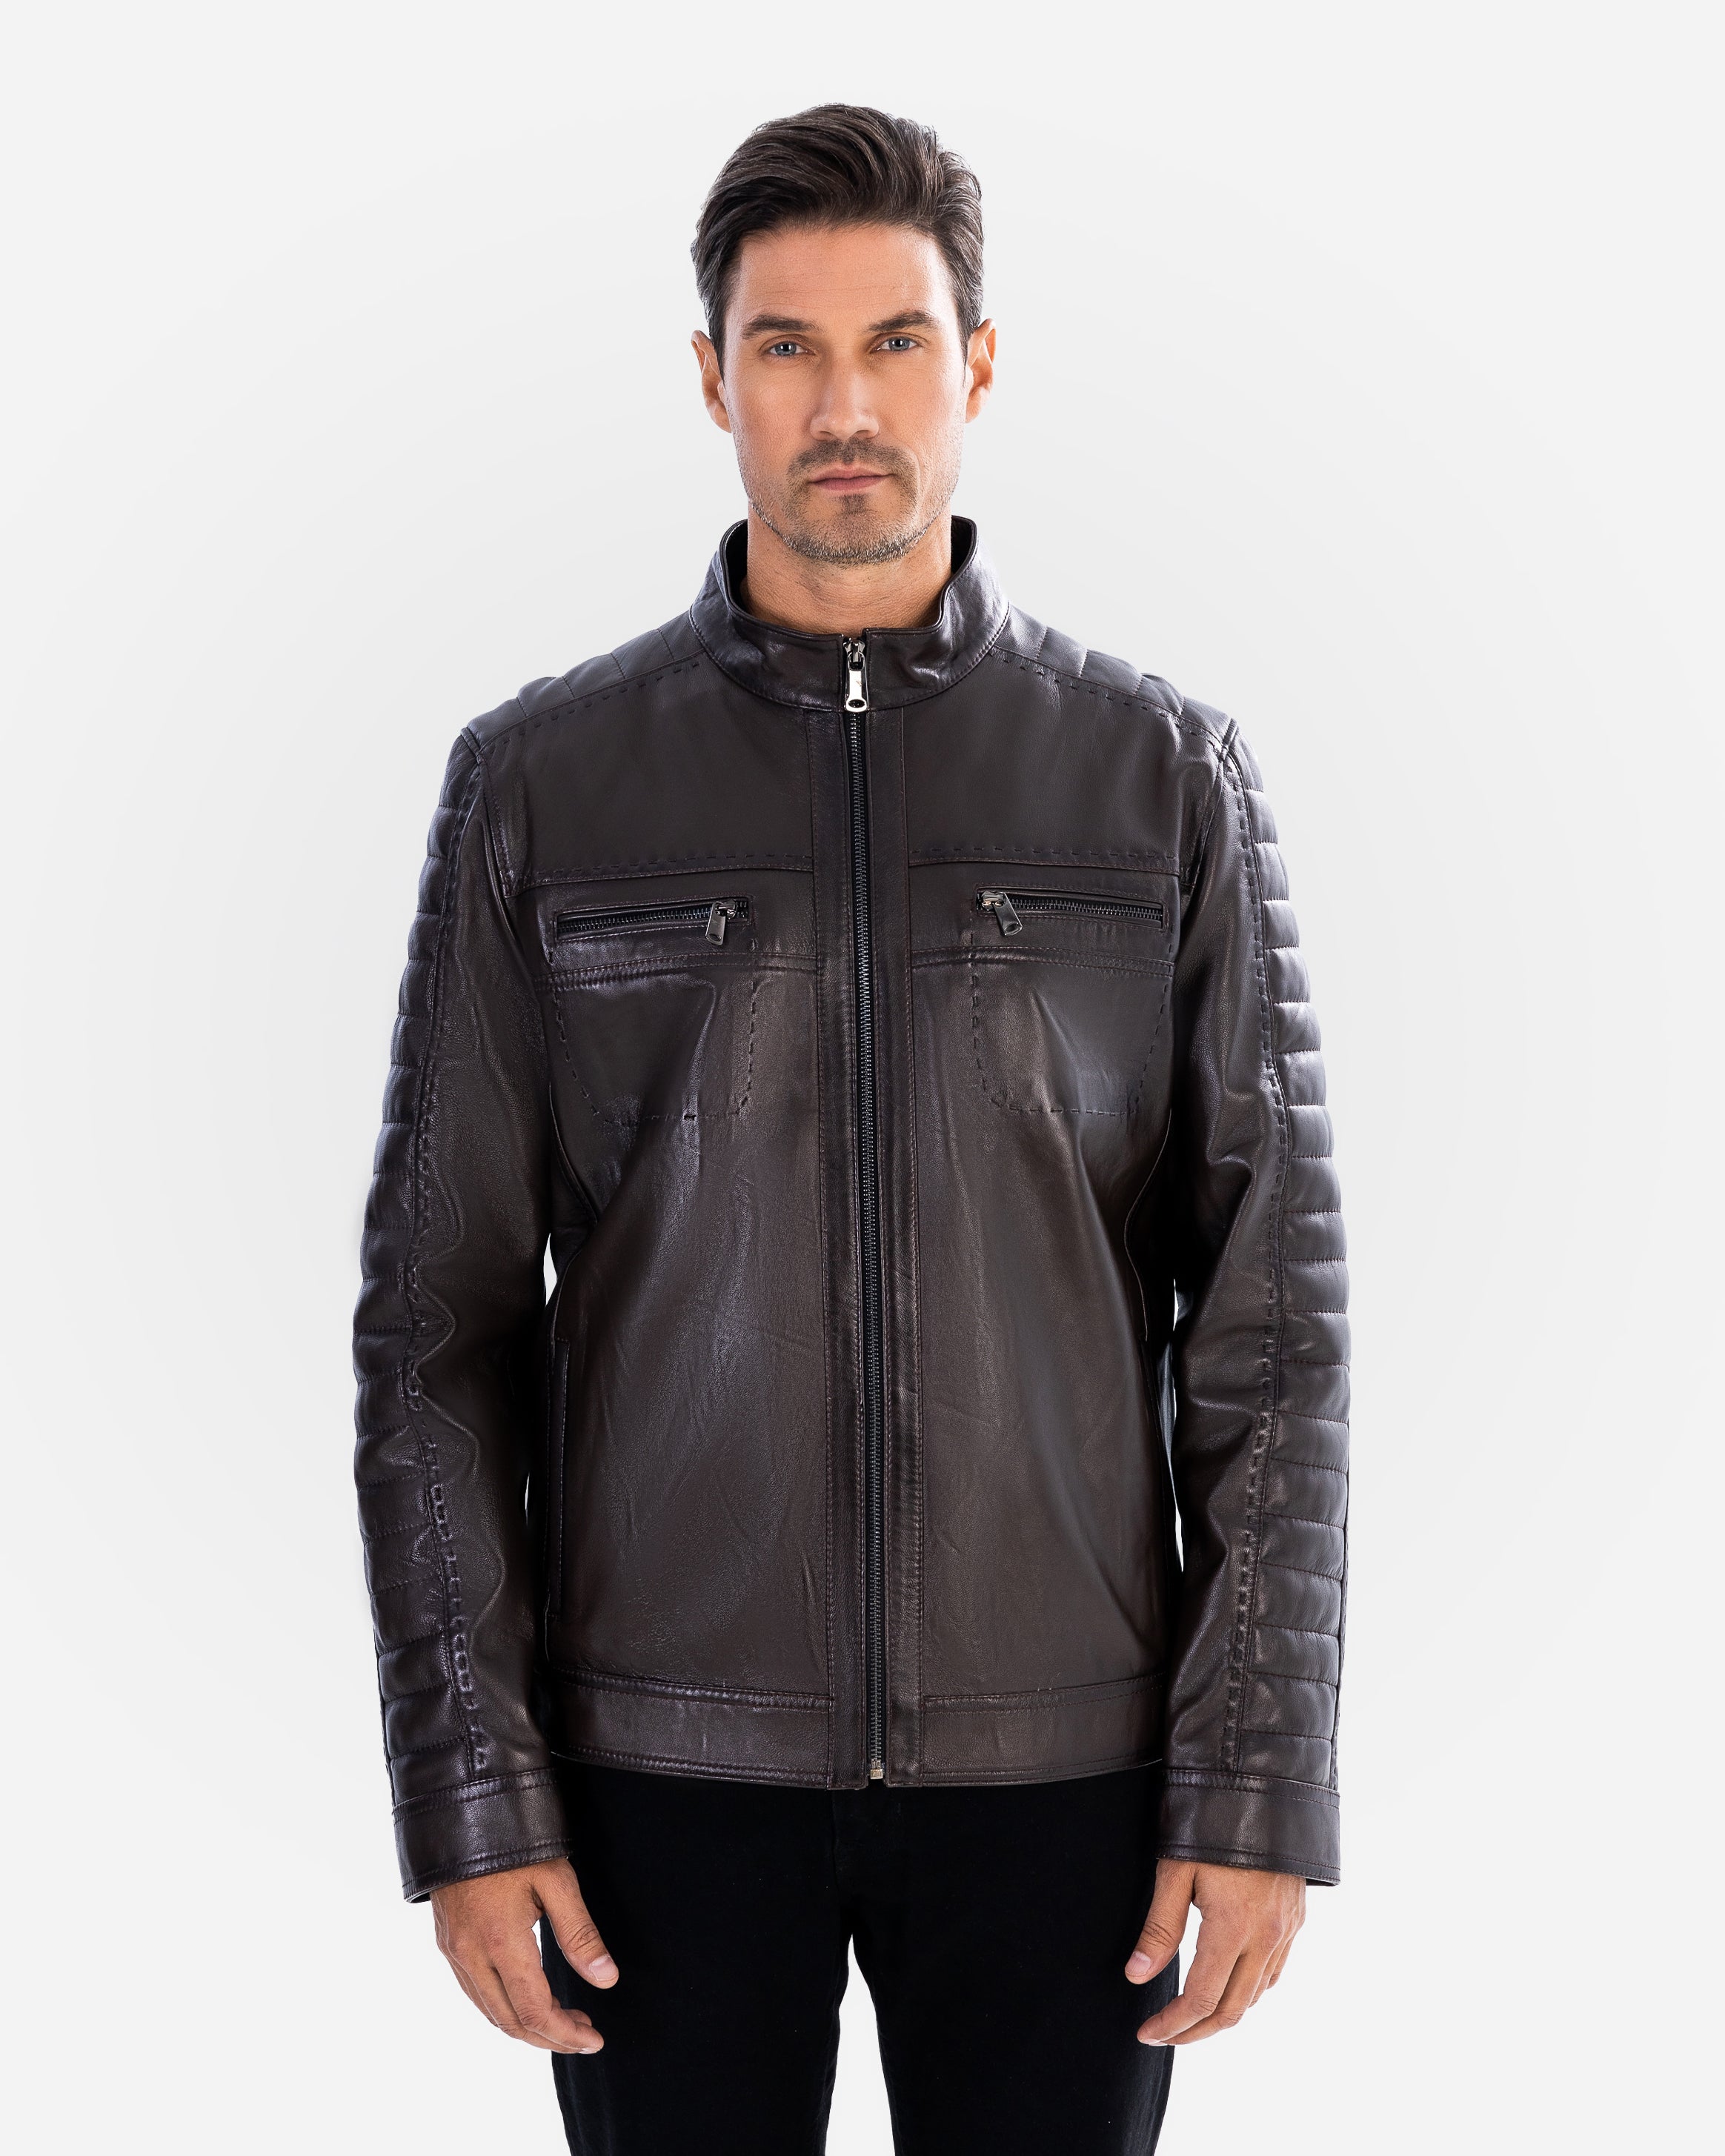 Louka Leather Jacket